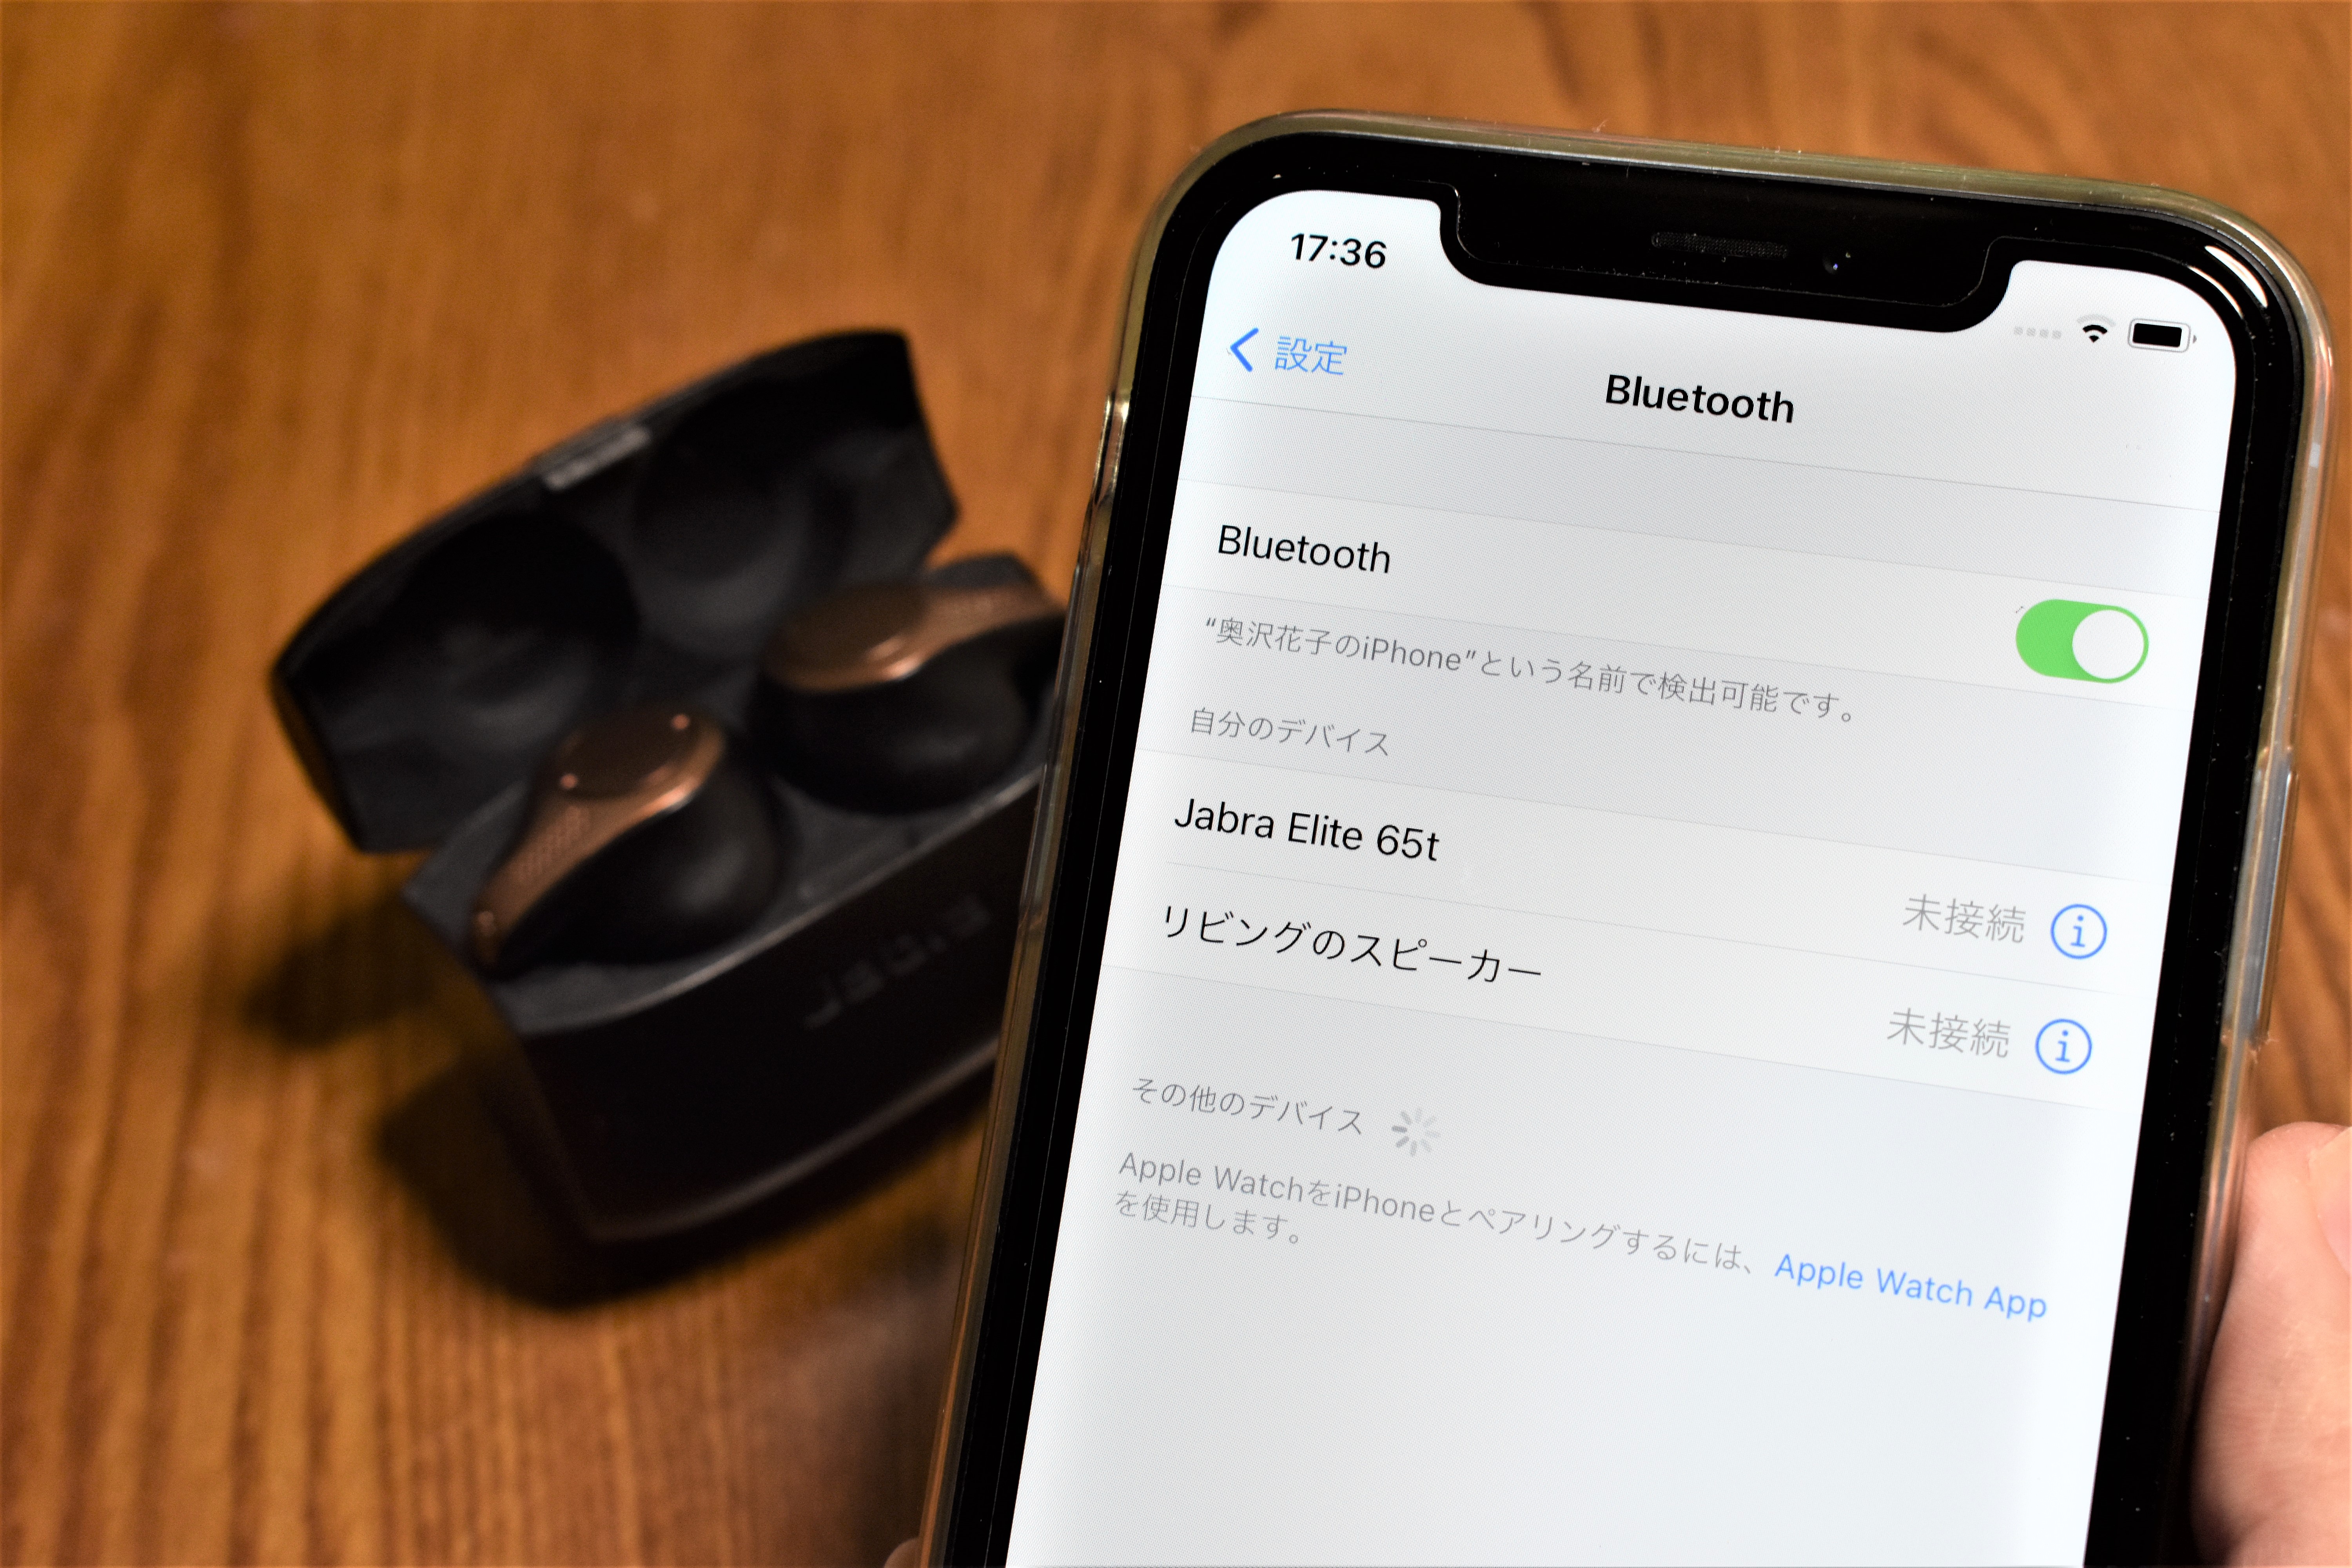 爆音で耳を傷めないために Bluetoothデバイスの種類を設定しておこう Iphone Tips Engadget 日本版